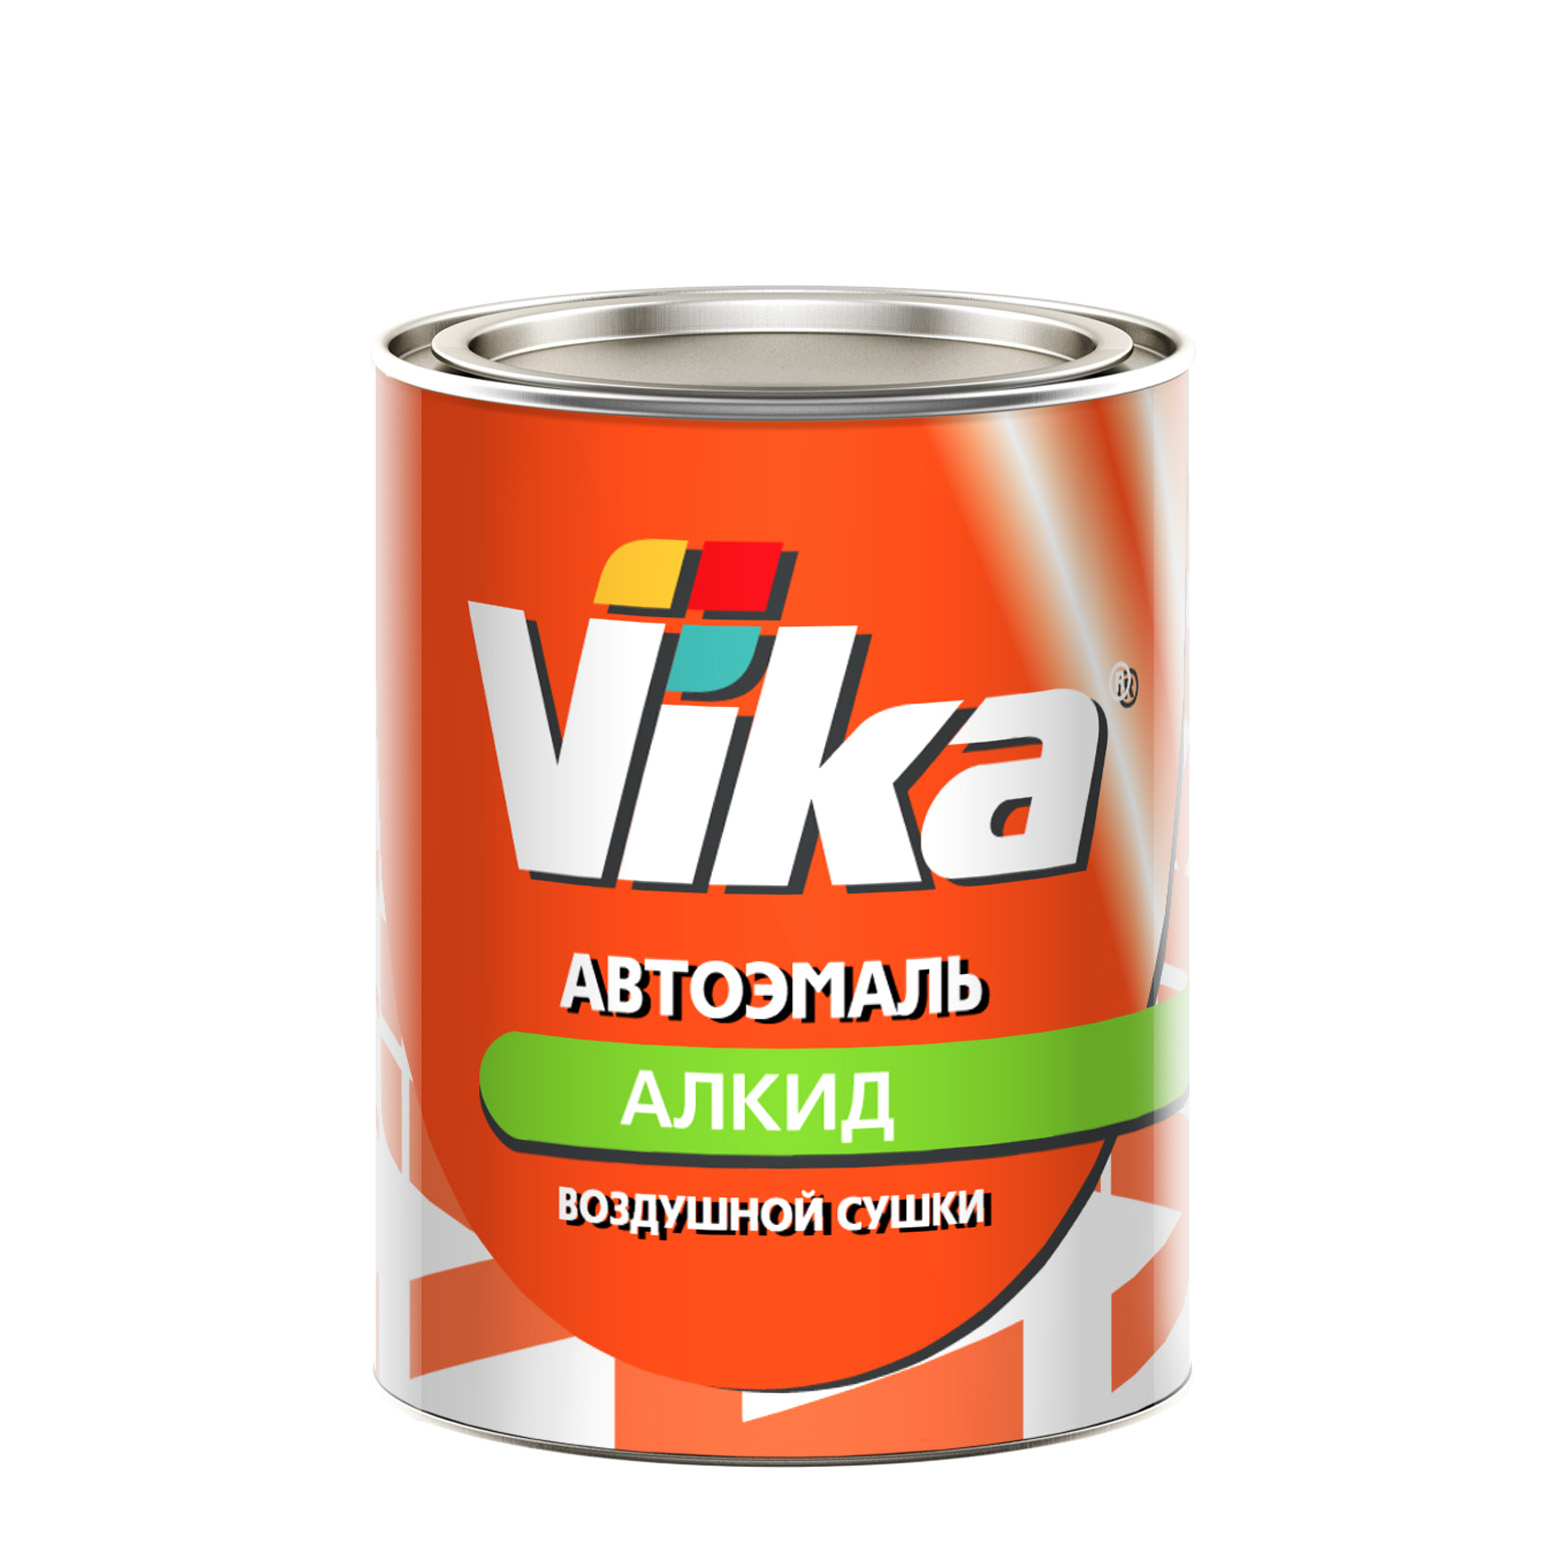 Фото 1 - Автоэмаль Vika-60, цвет Сливочно-белая алкидная глянцевая естественной сушки - 0,8 кг.